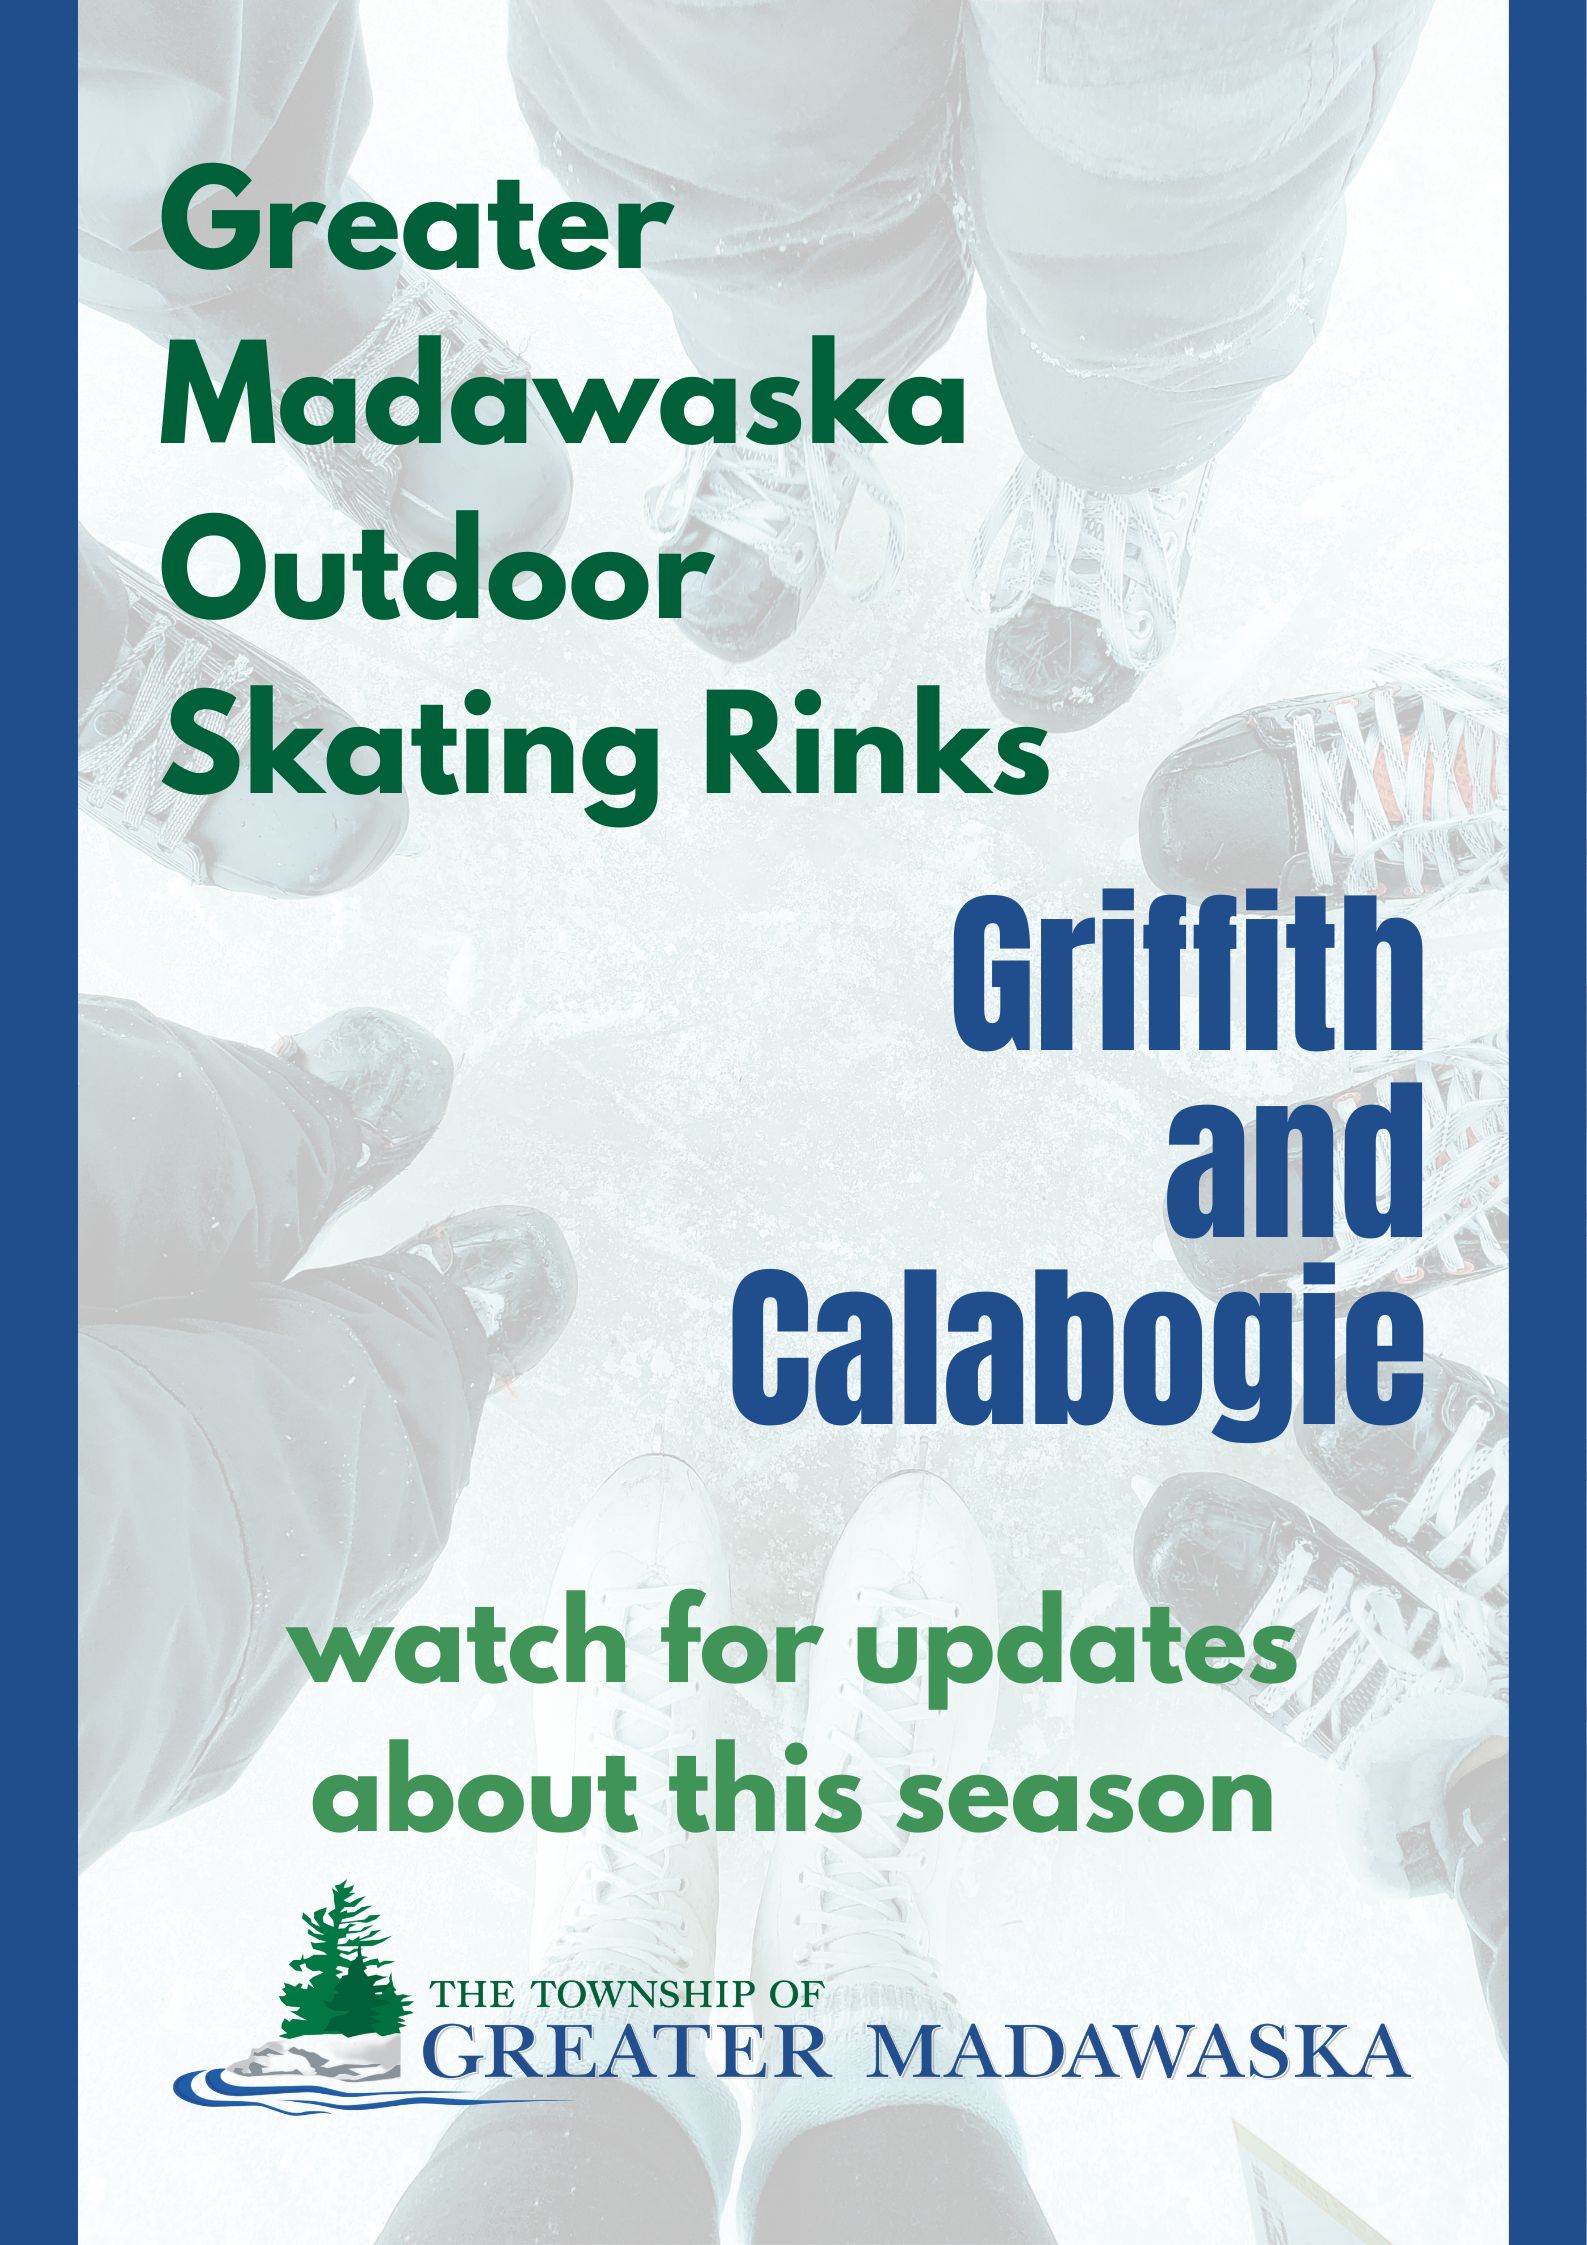 griffith and calabogie greater madawaska outdoor skating rinks